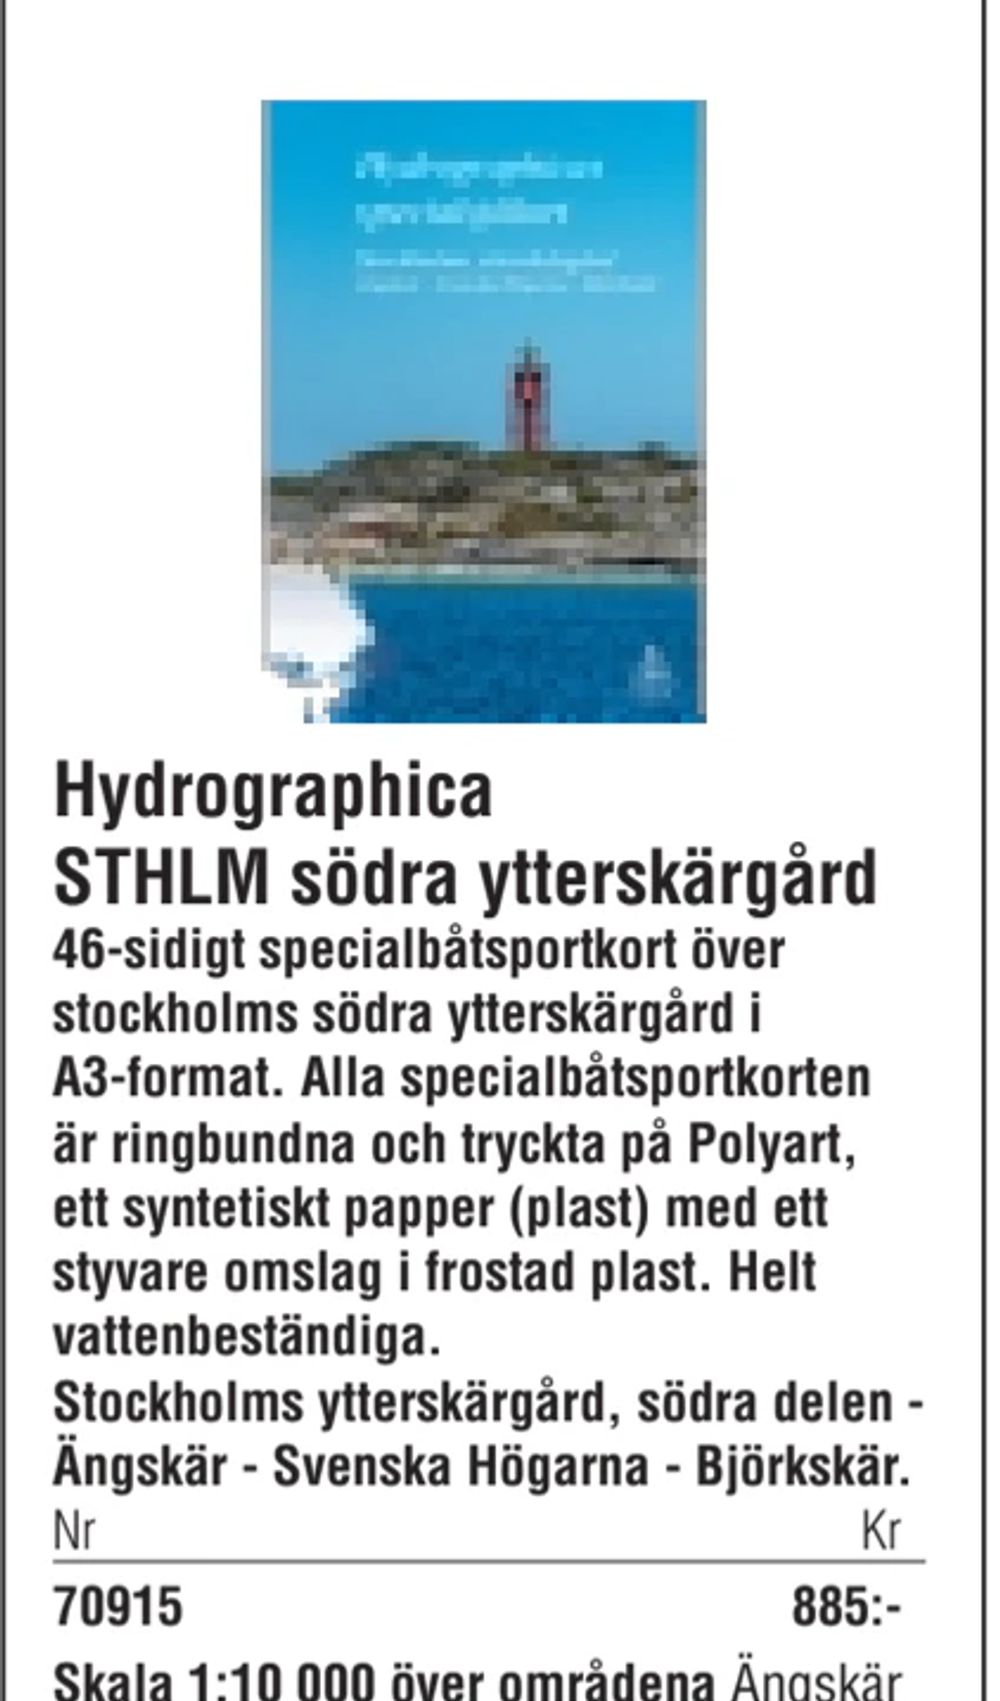 Erbjudanden på Hydrographica STHLM södra ytterskärgård från Erlandsons Brygga för 885 kr